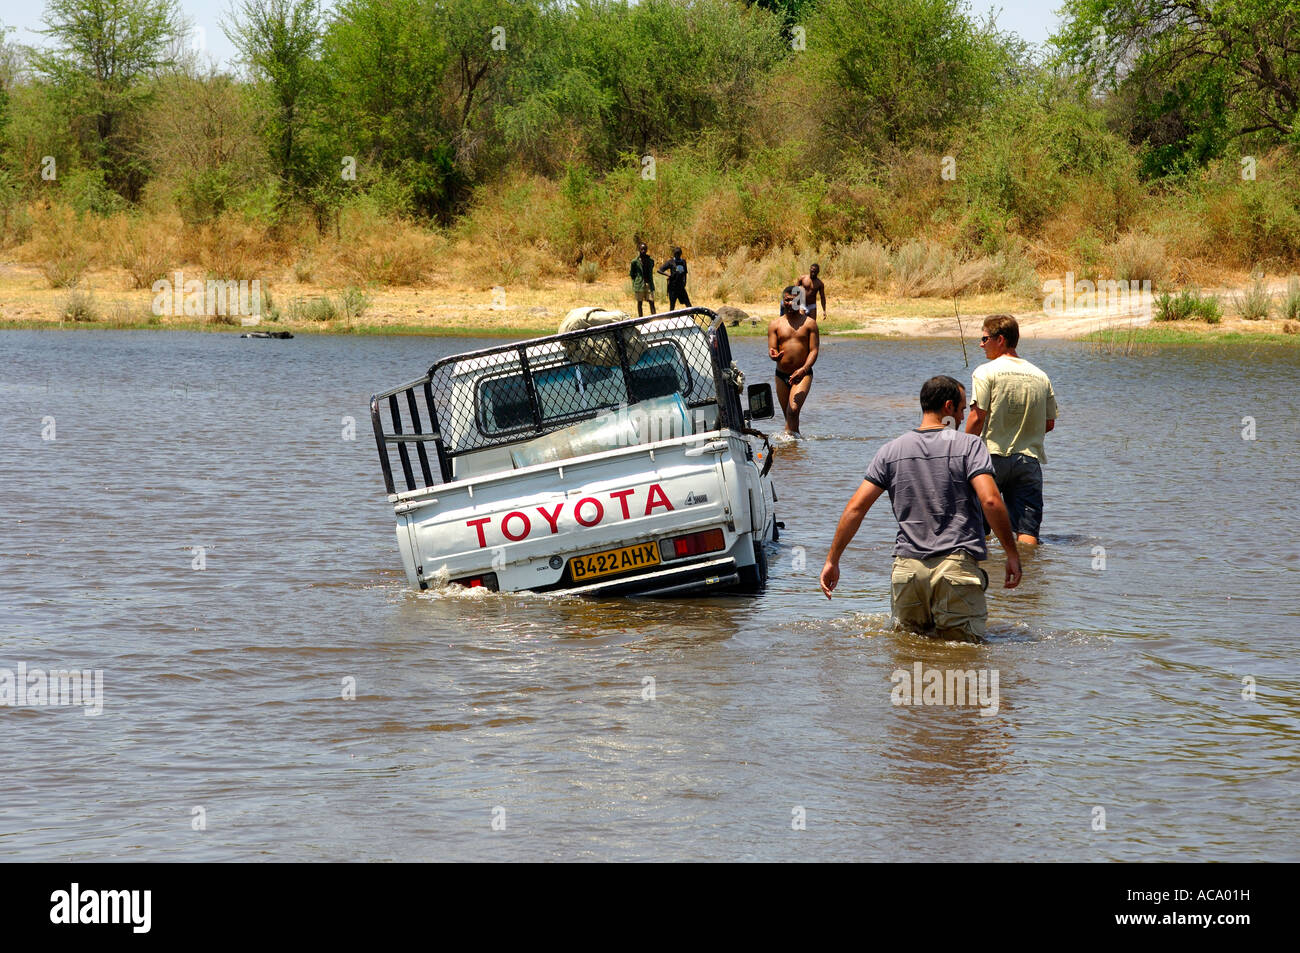 Quatre roues motrices jeep booged vers le bas tout en traversant une rivière, de bons conseils sont rares, Botswana, Africa Banque D'Images